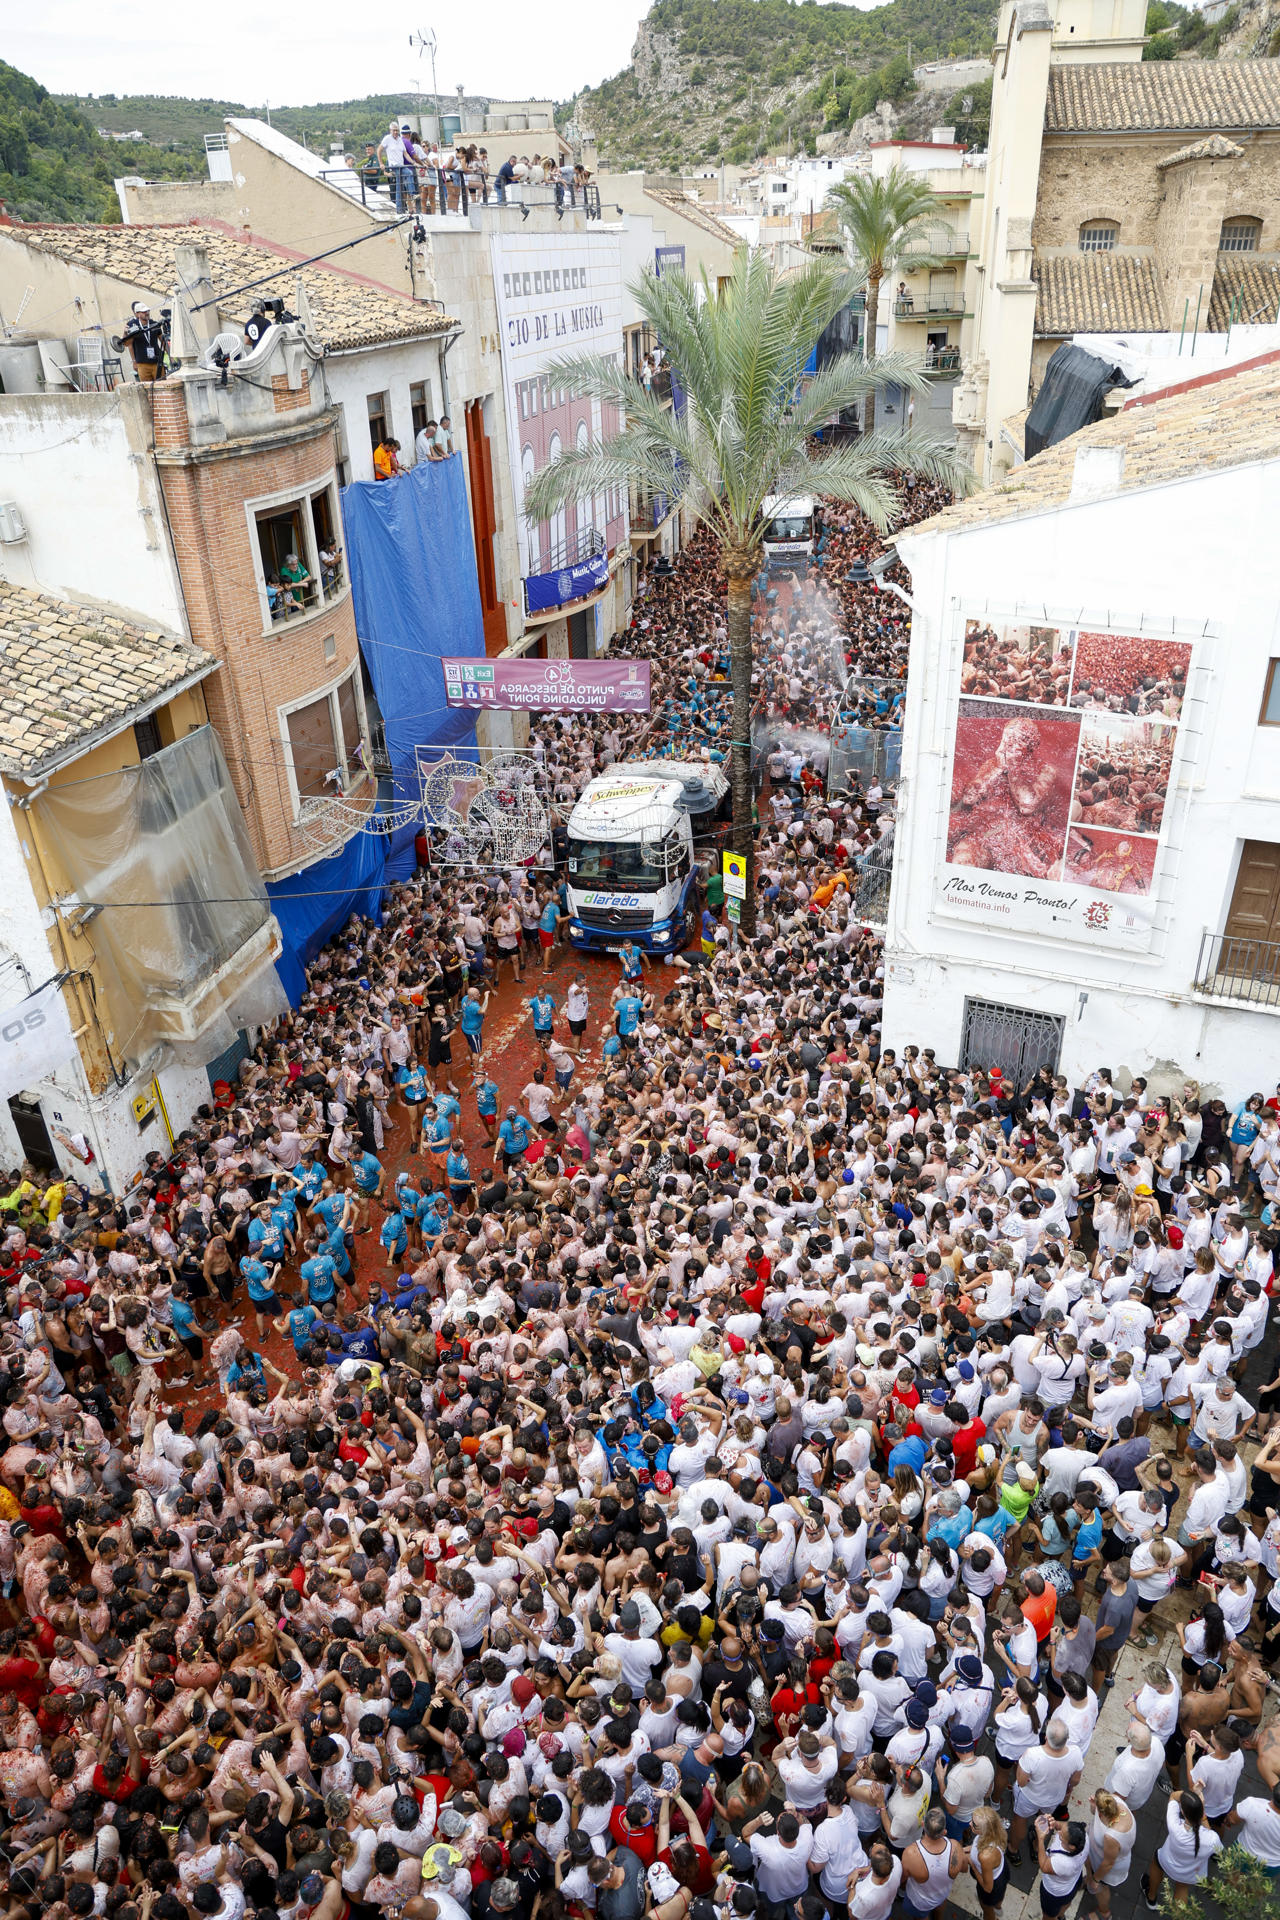 Buñol (Valencia) vuelve un año más a teñirse de rojo con los 120.000 kilos de munición festiva (tomates) que se disparan en la Tomatina, una de las fiestas españolas más internacionales. EFE/Miguel Ángel Polo
